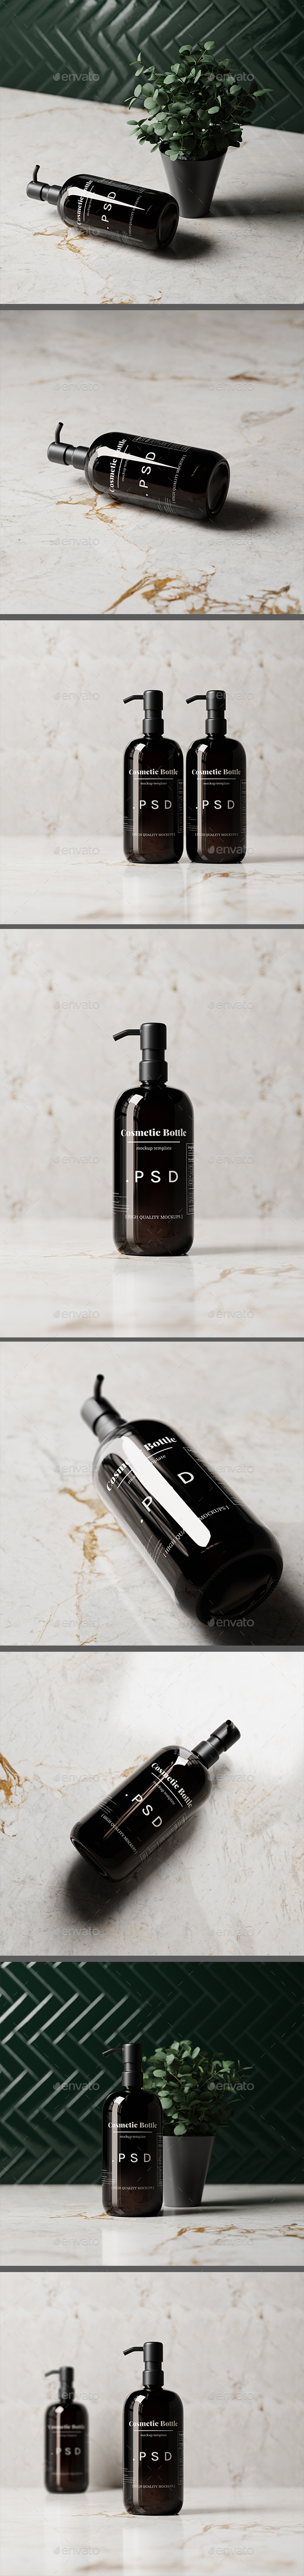 [DOWNLOAD]Black Pump Bottle Mockups